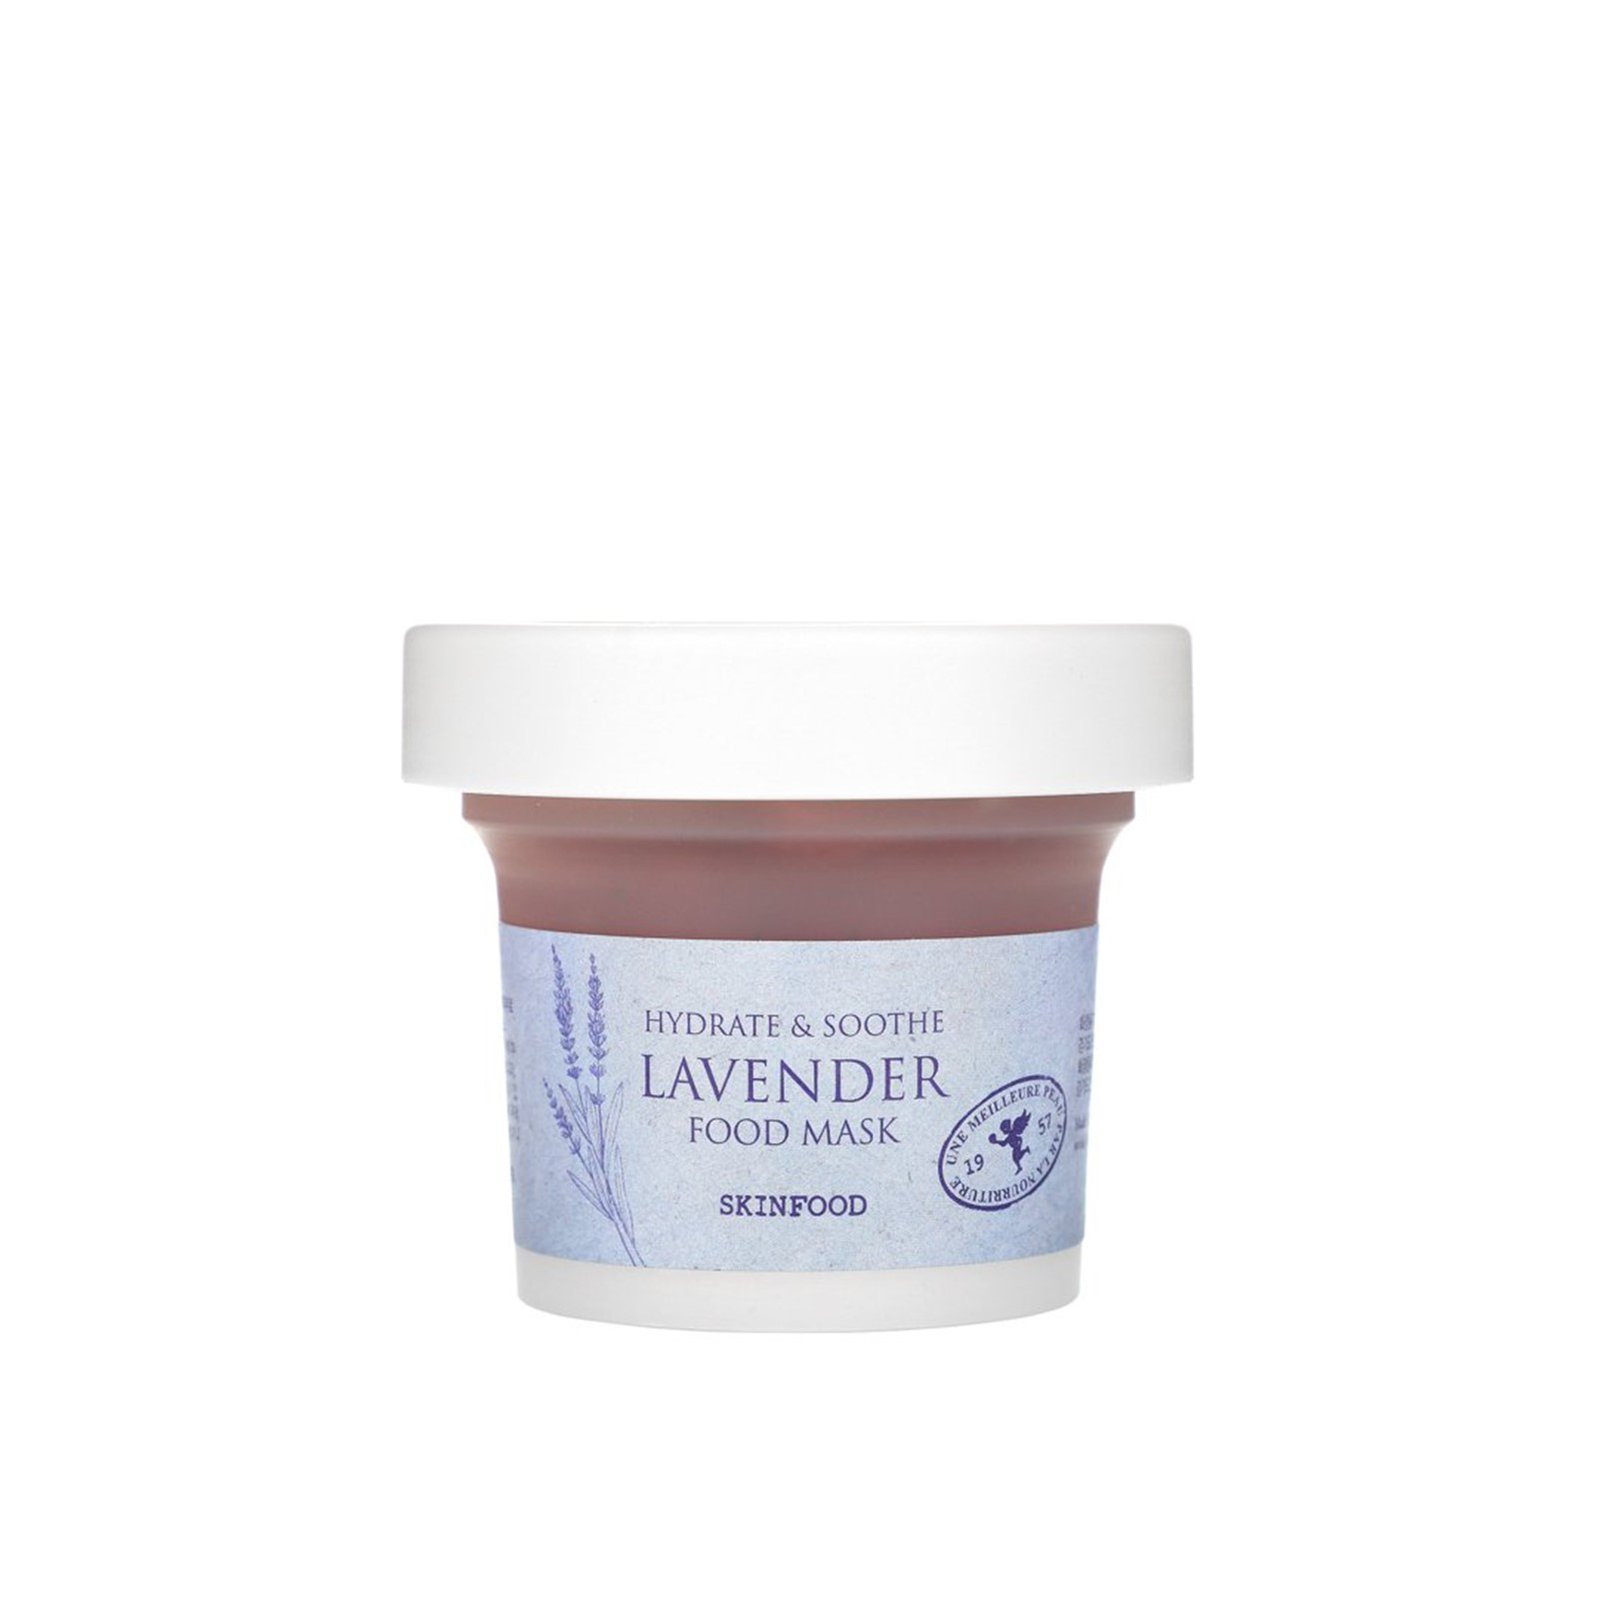 SKINFOOD Lavender Food Mask 120g (4.23 oz)